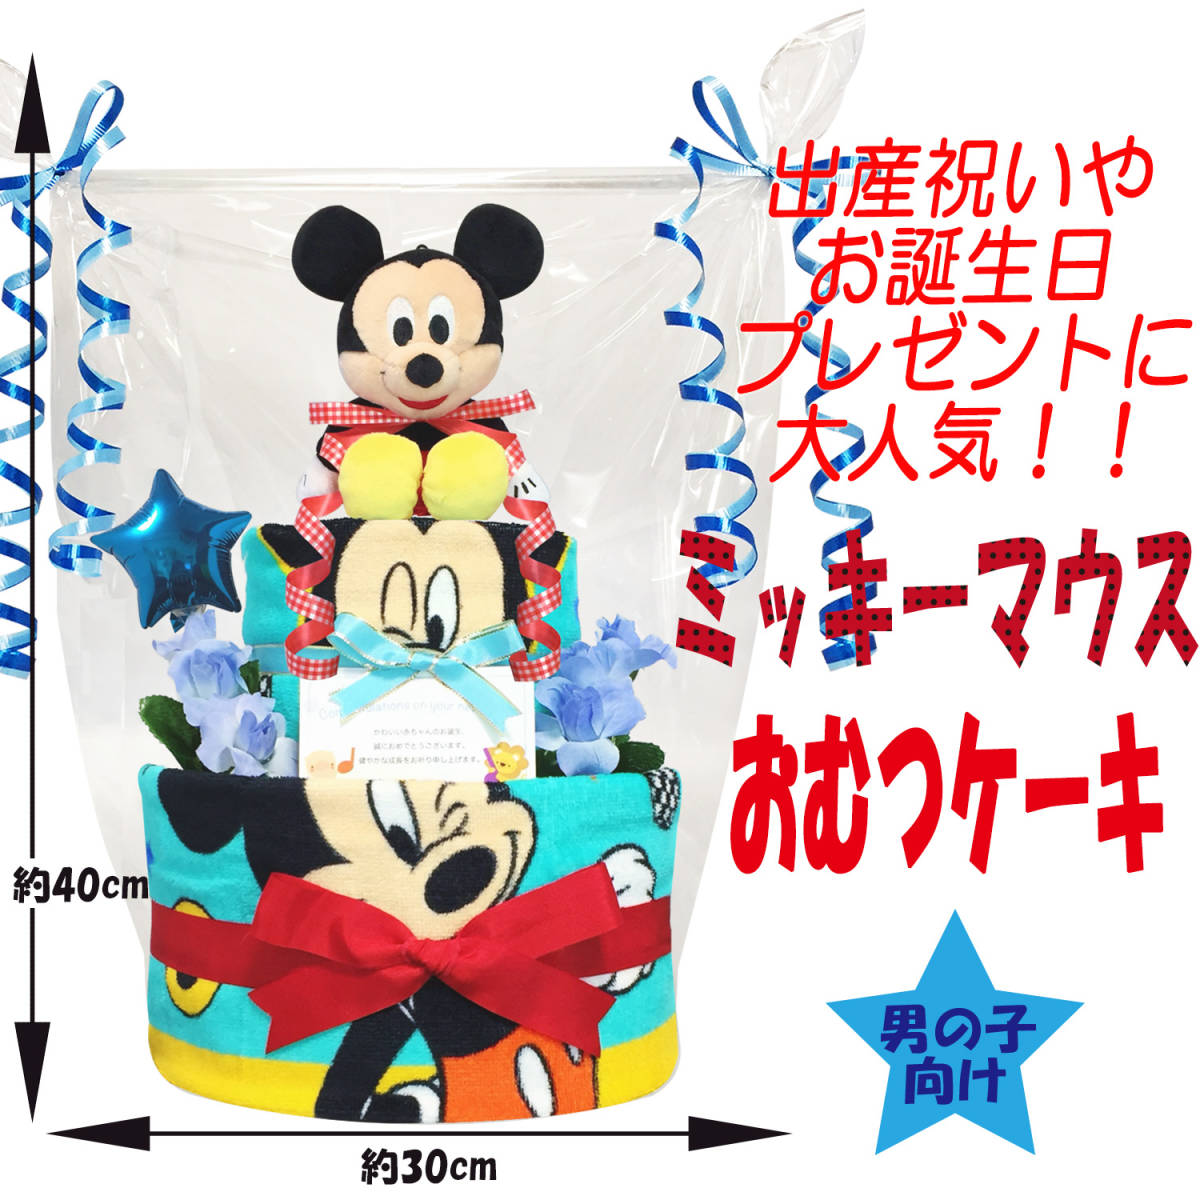 * бесплатная доставка * очень популярный Disney Mickey. роскошный 2 уровень подгузники кекс празднование рождения . рекомендация! baby душ, половина день рождения оптимальный!